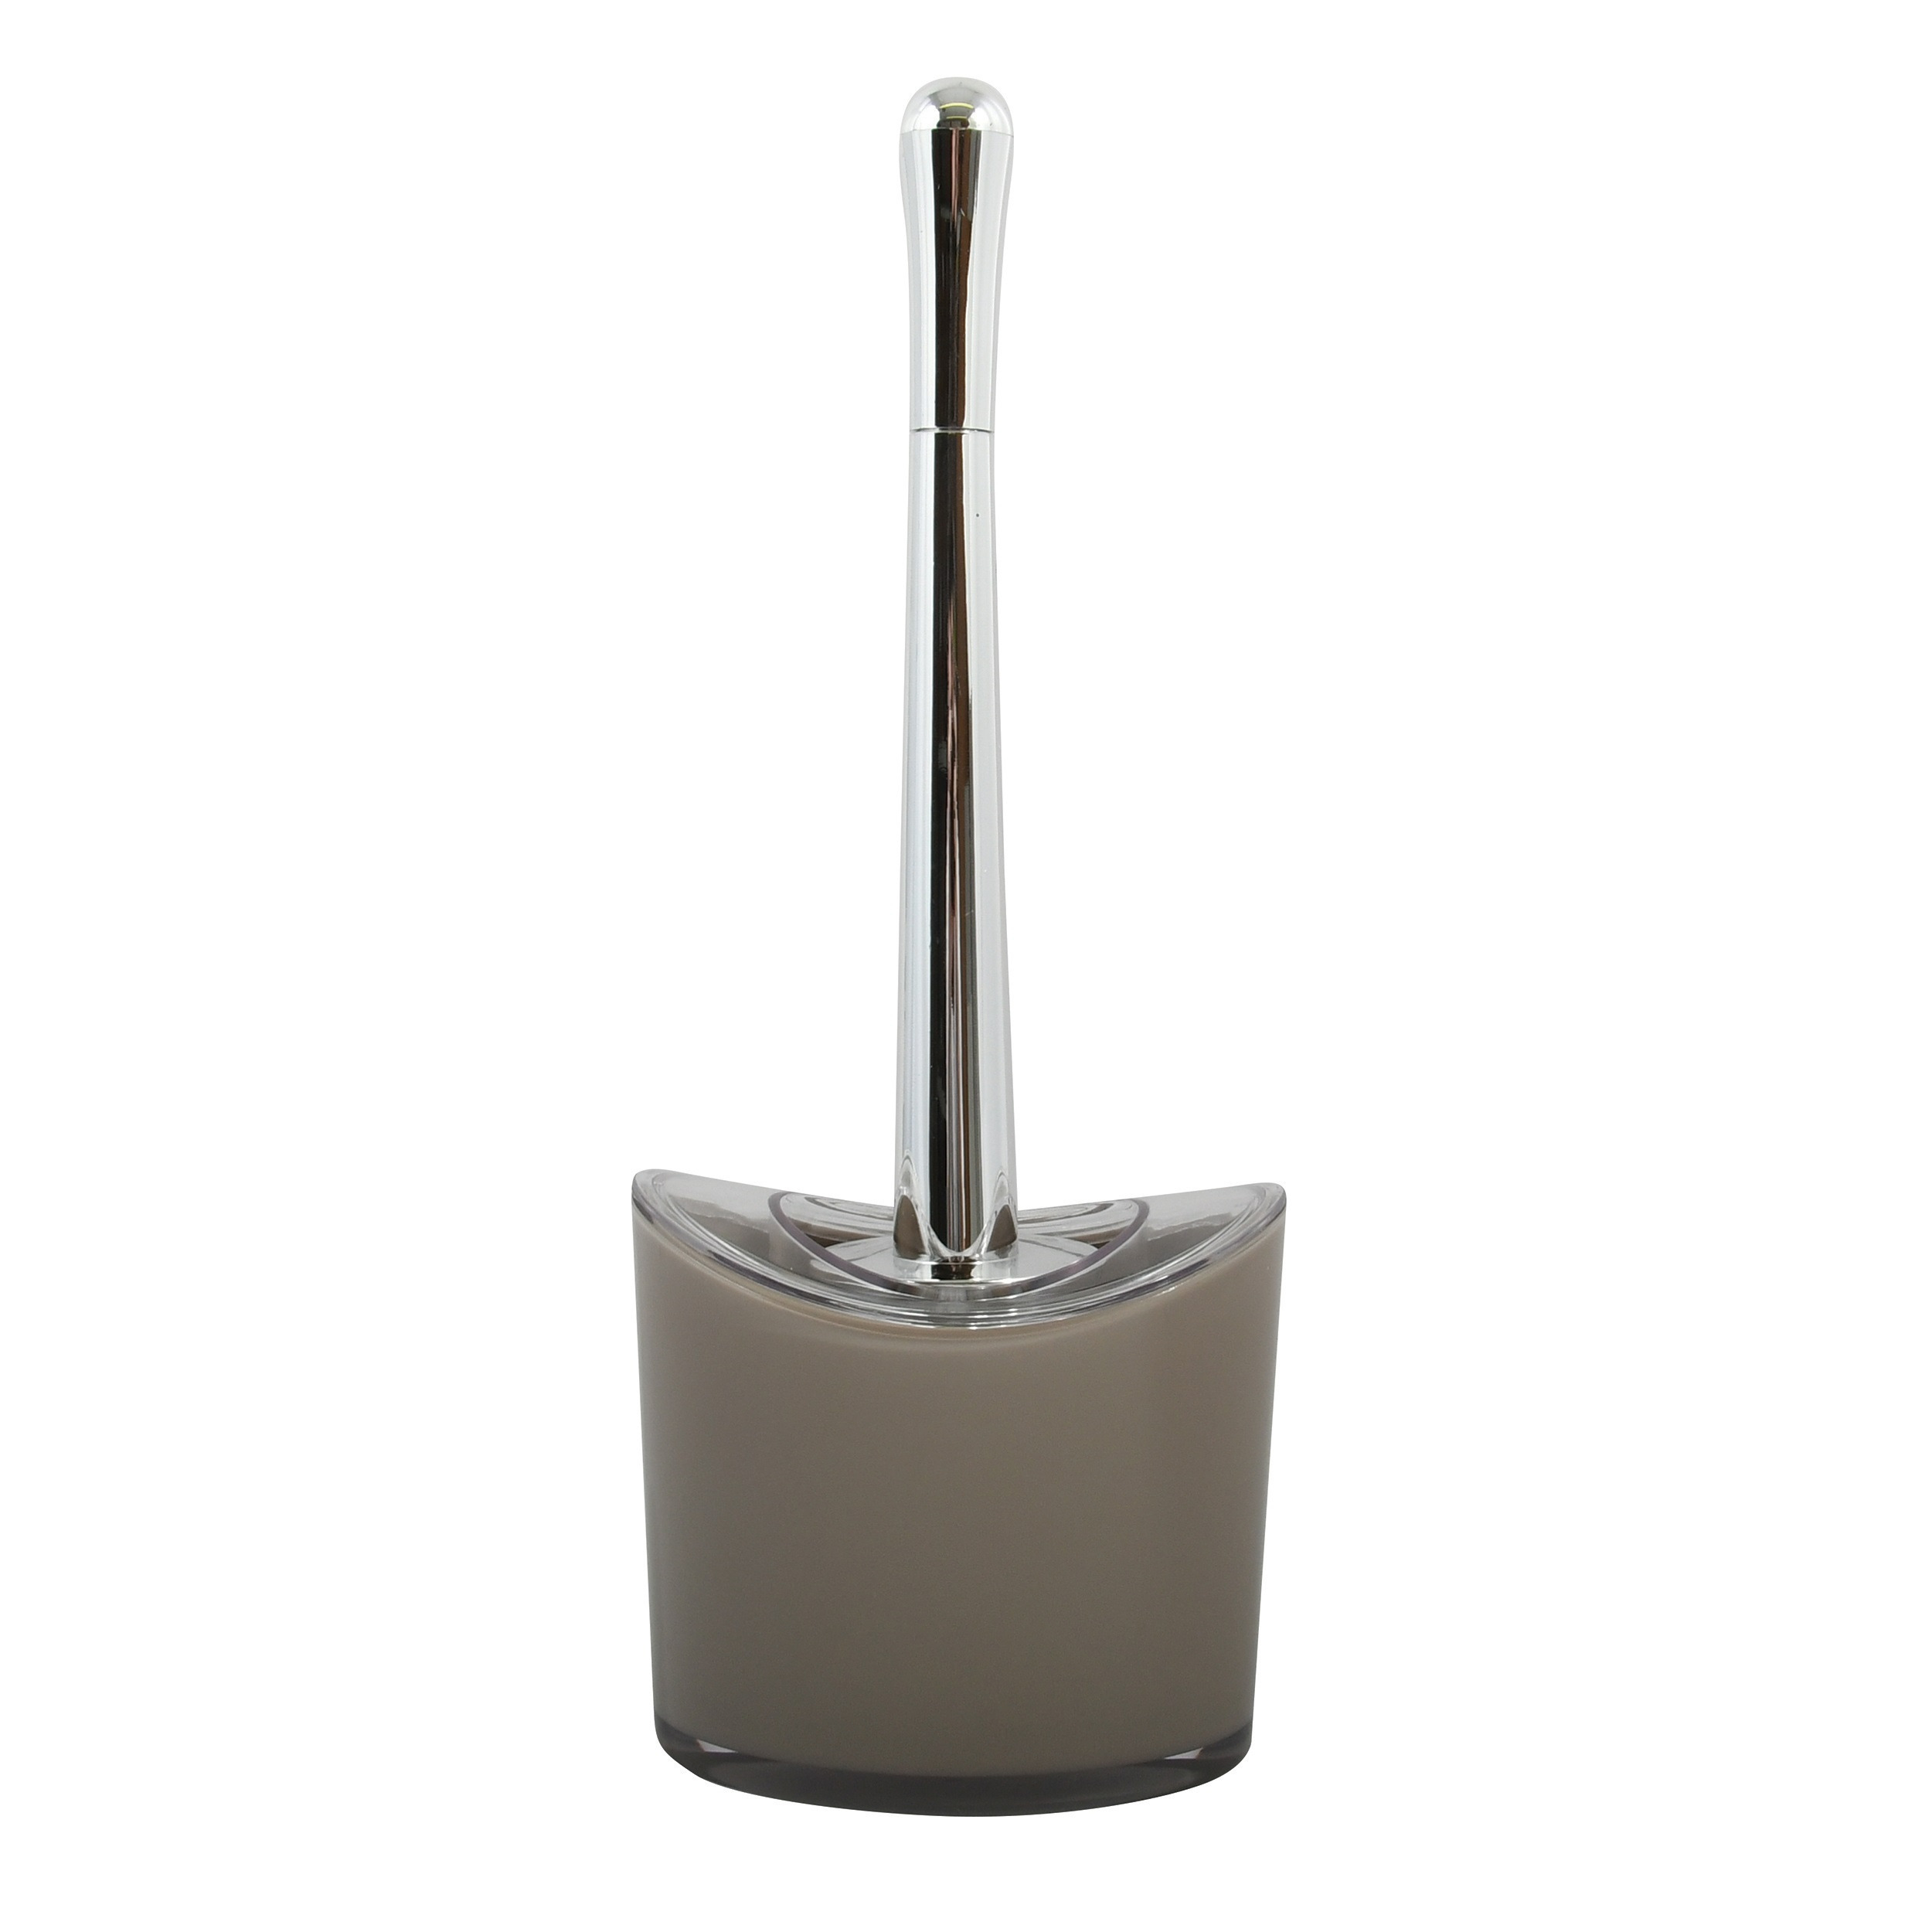 MSV Toiletborstel in houder/wc-borstel Aveiro - PS kunststof/rvs - beige/zilver - x 14 cm -